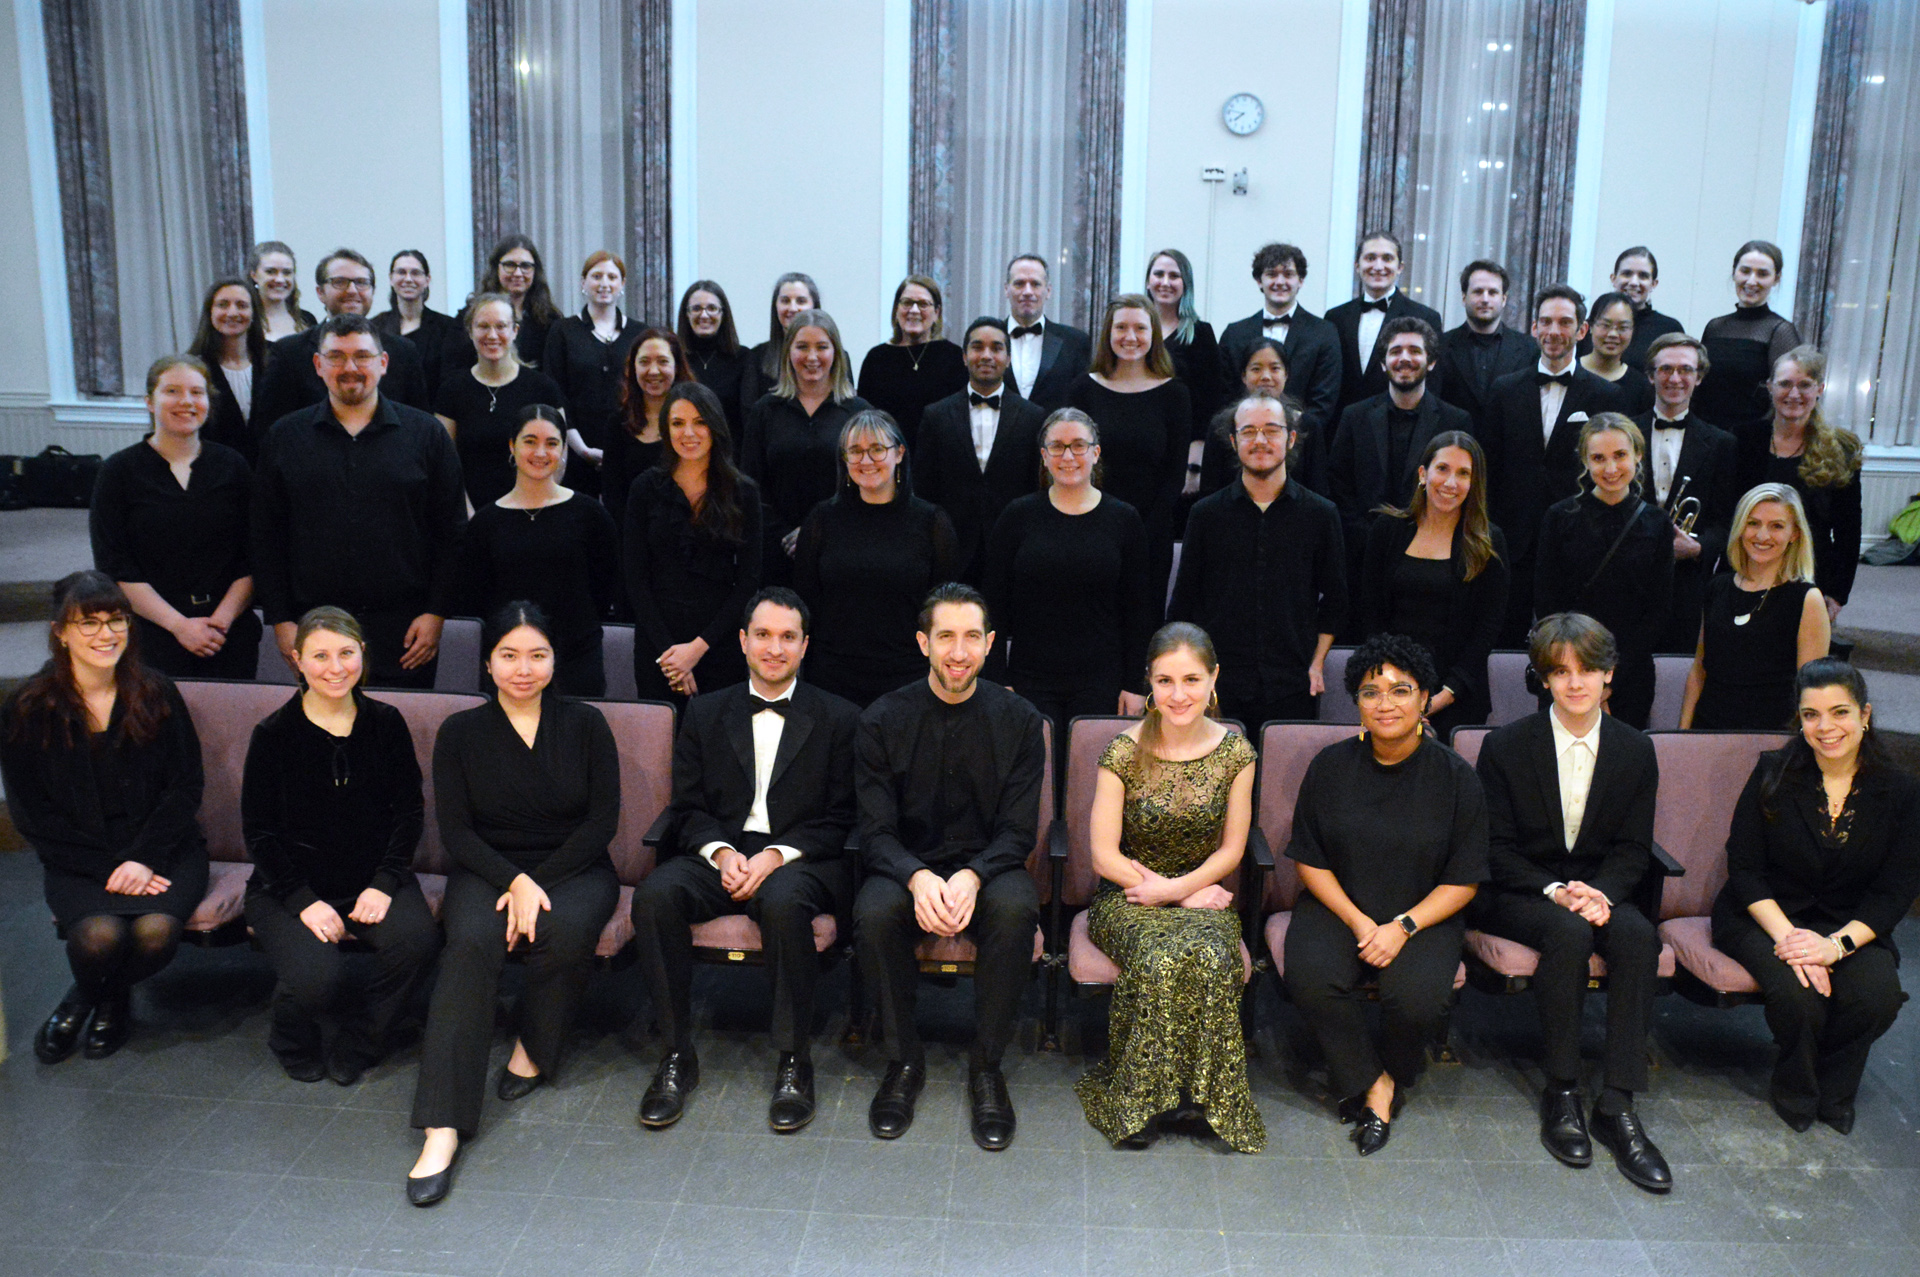 Hochstein alumni musicians return for a special concert